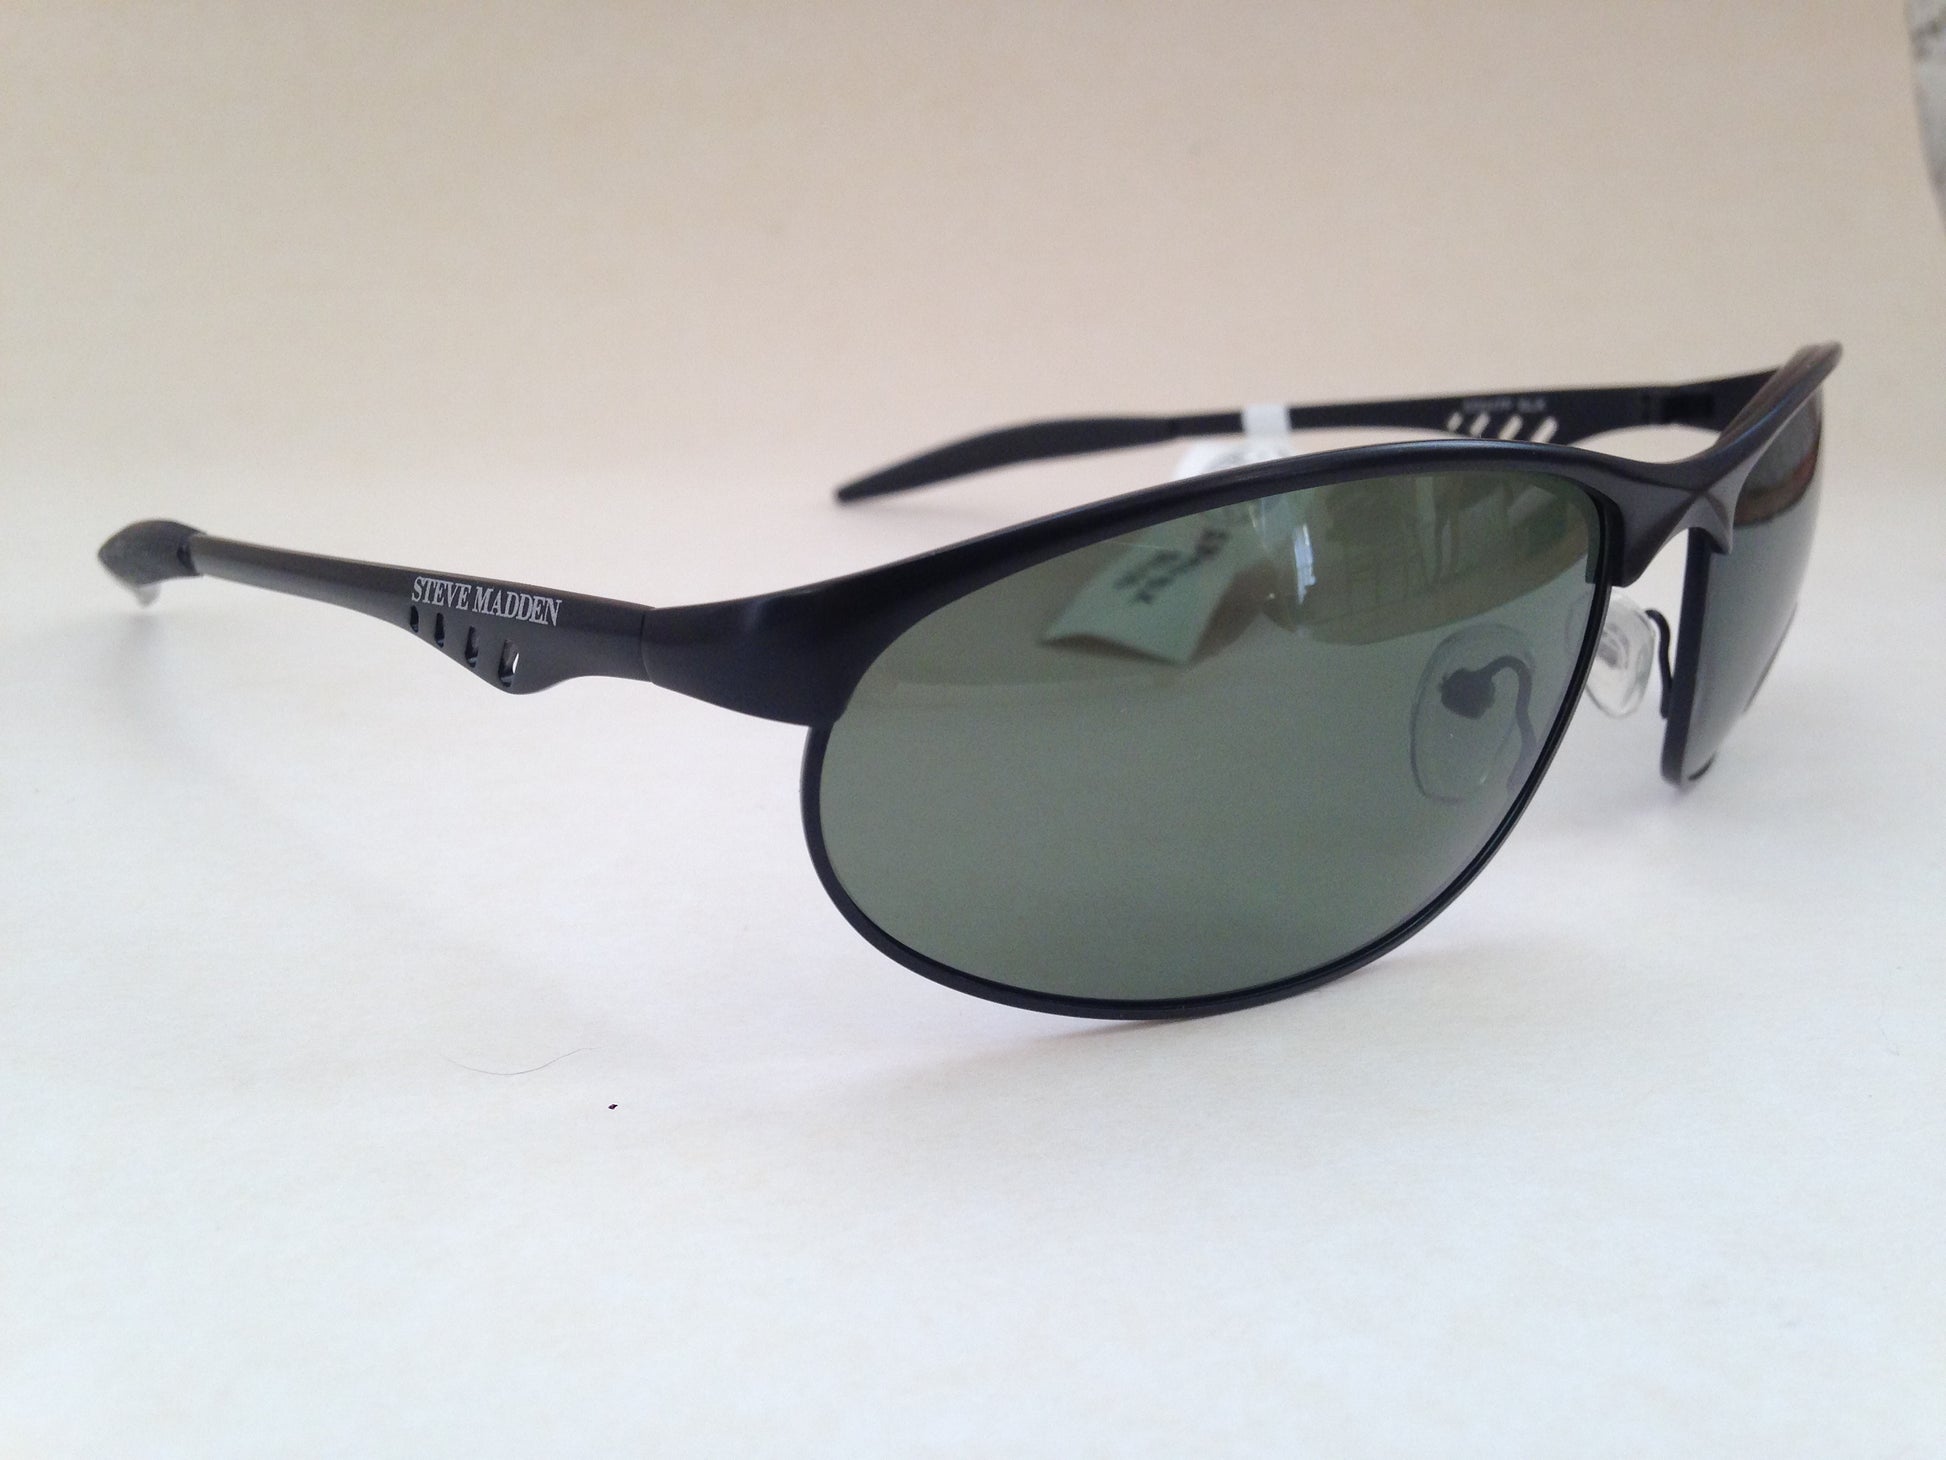 Steve Madden Sunglasses Polarized Sport Black Metal Frame Green Lens S3047P Blk - Sunglasses